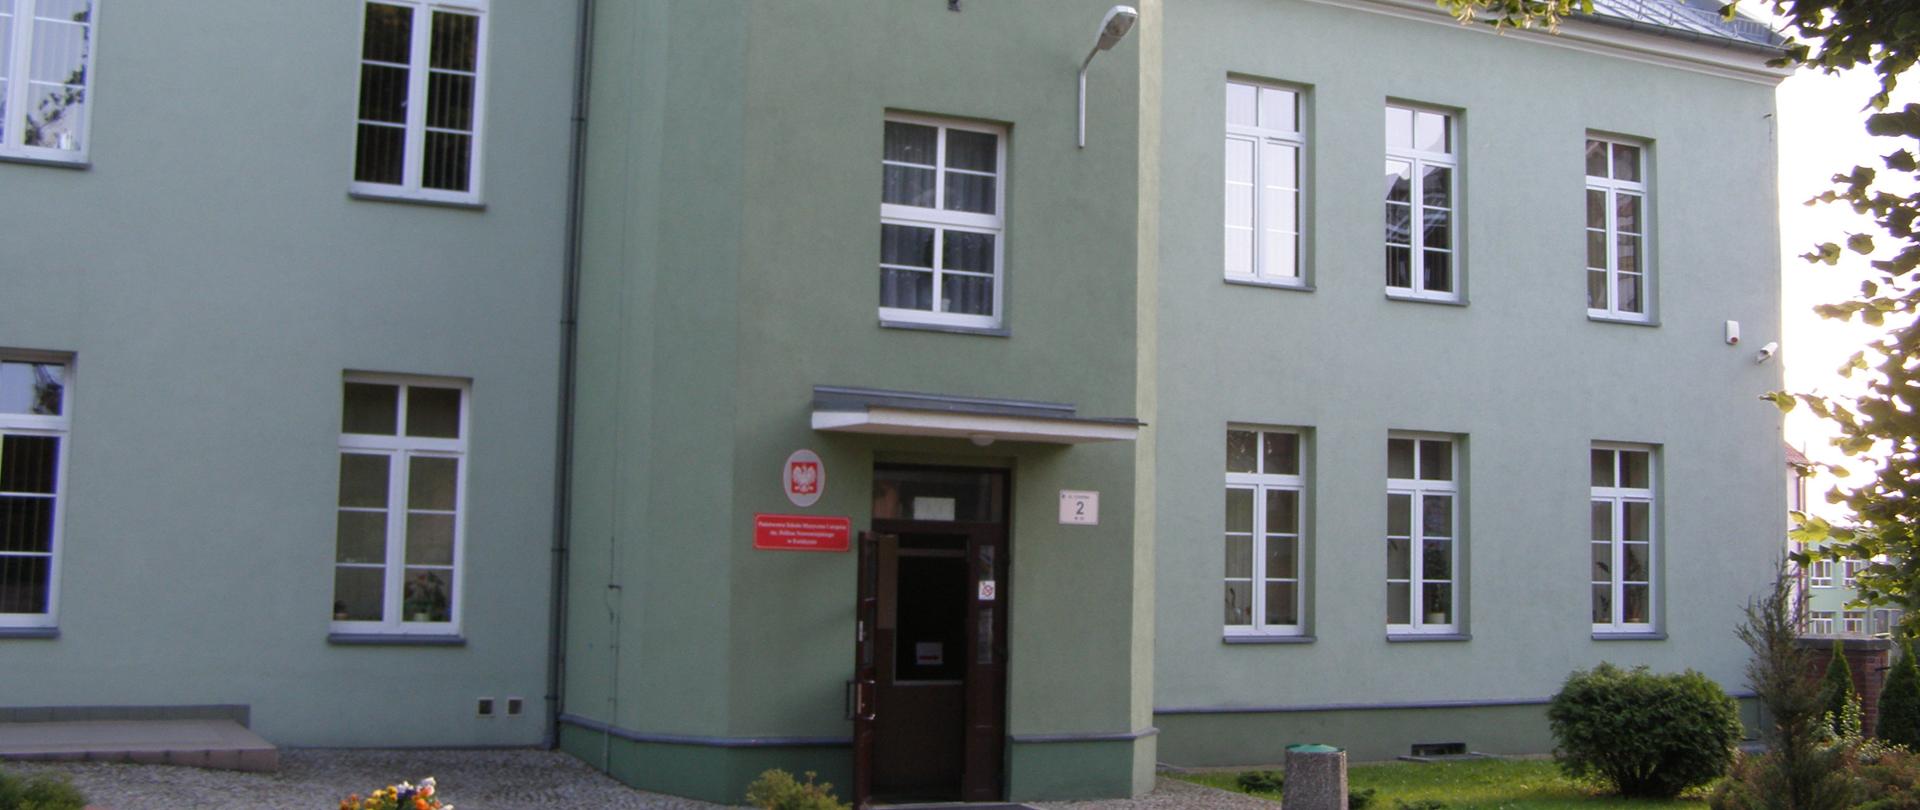  Zielony, dwupiętrowy budynek szkoły z czerwoną tablicą nazwy szkoły po lewej stronie wejścia głównego